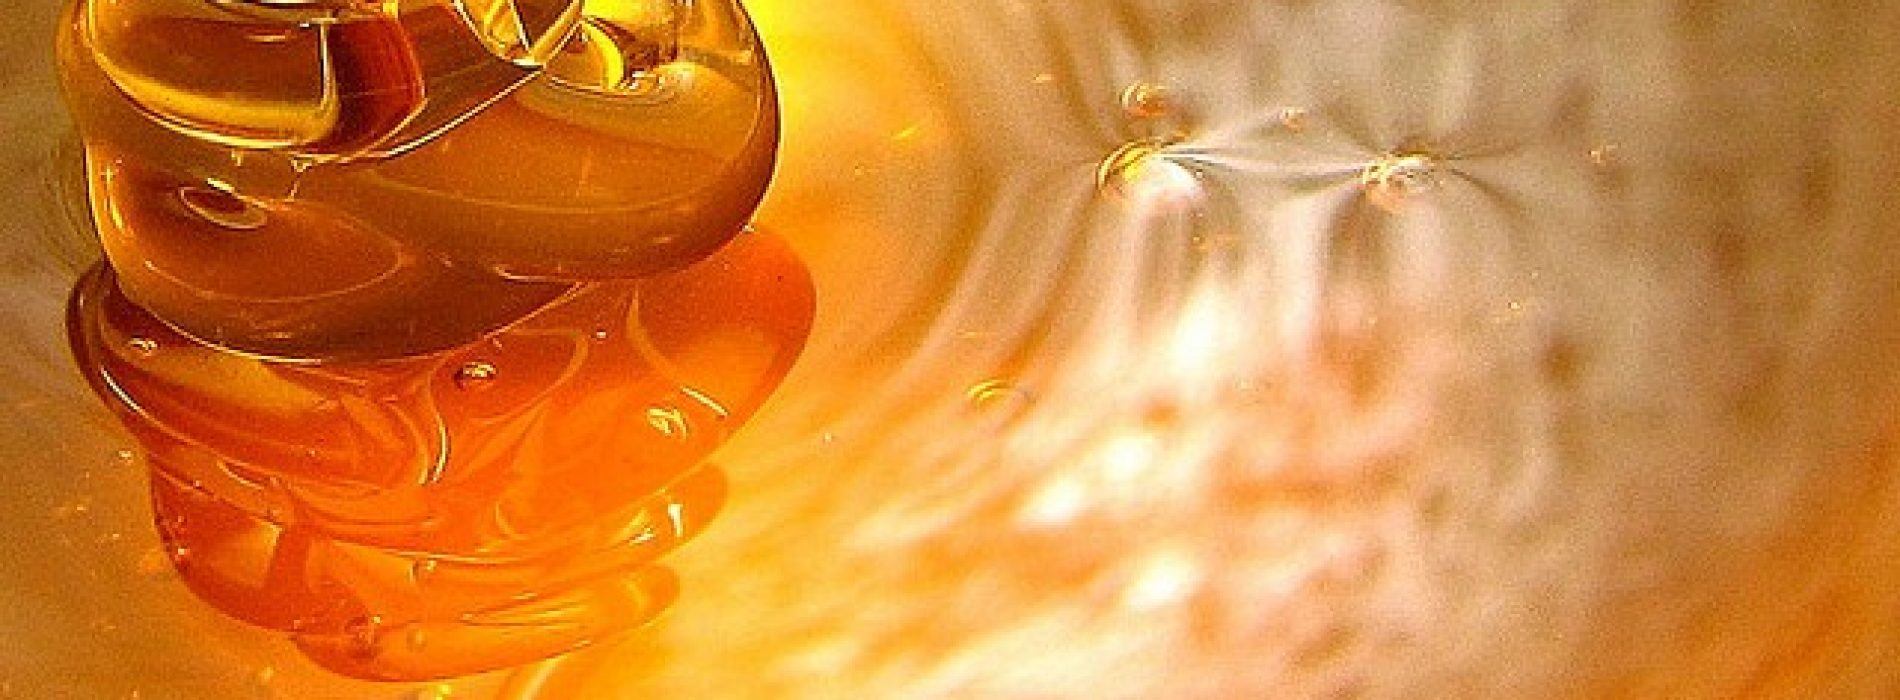 Honing gaat alle schadelijke bacterien te lijf